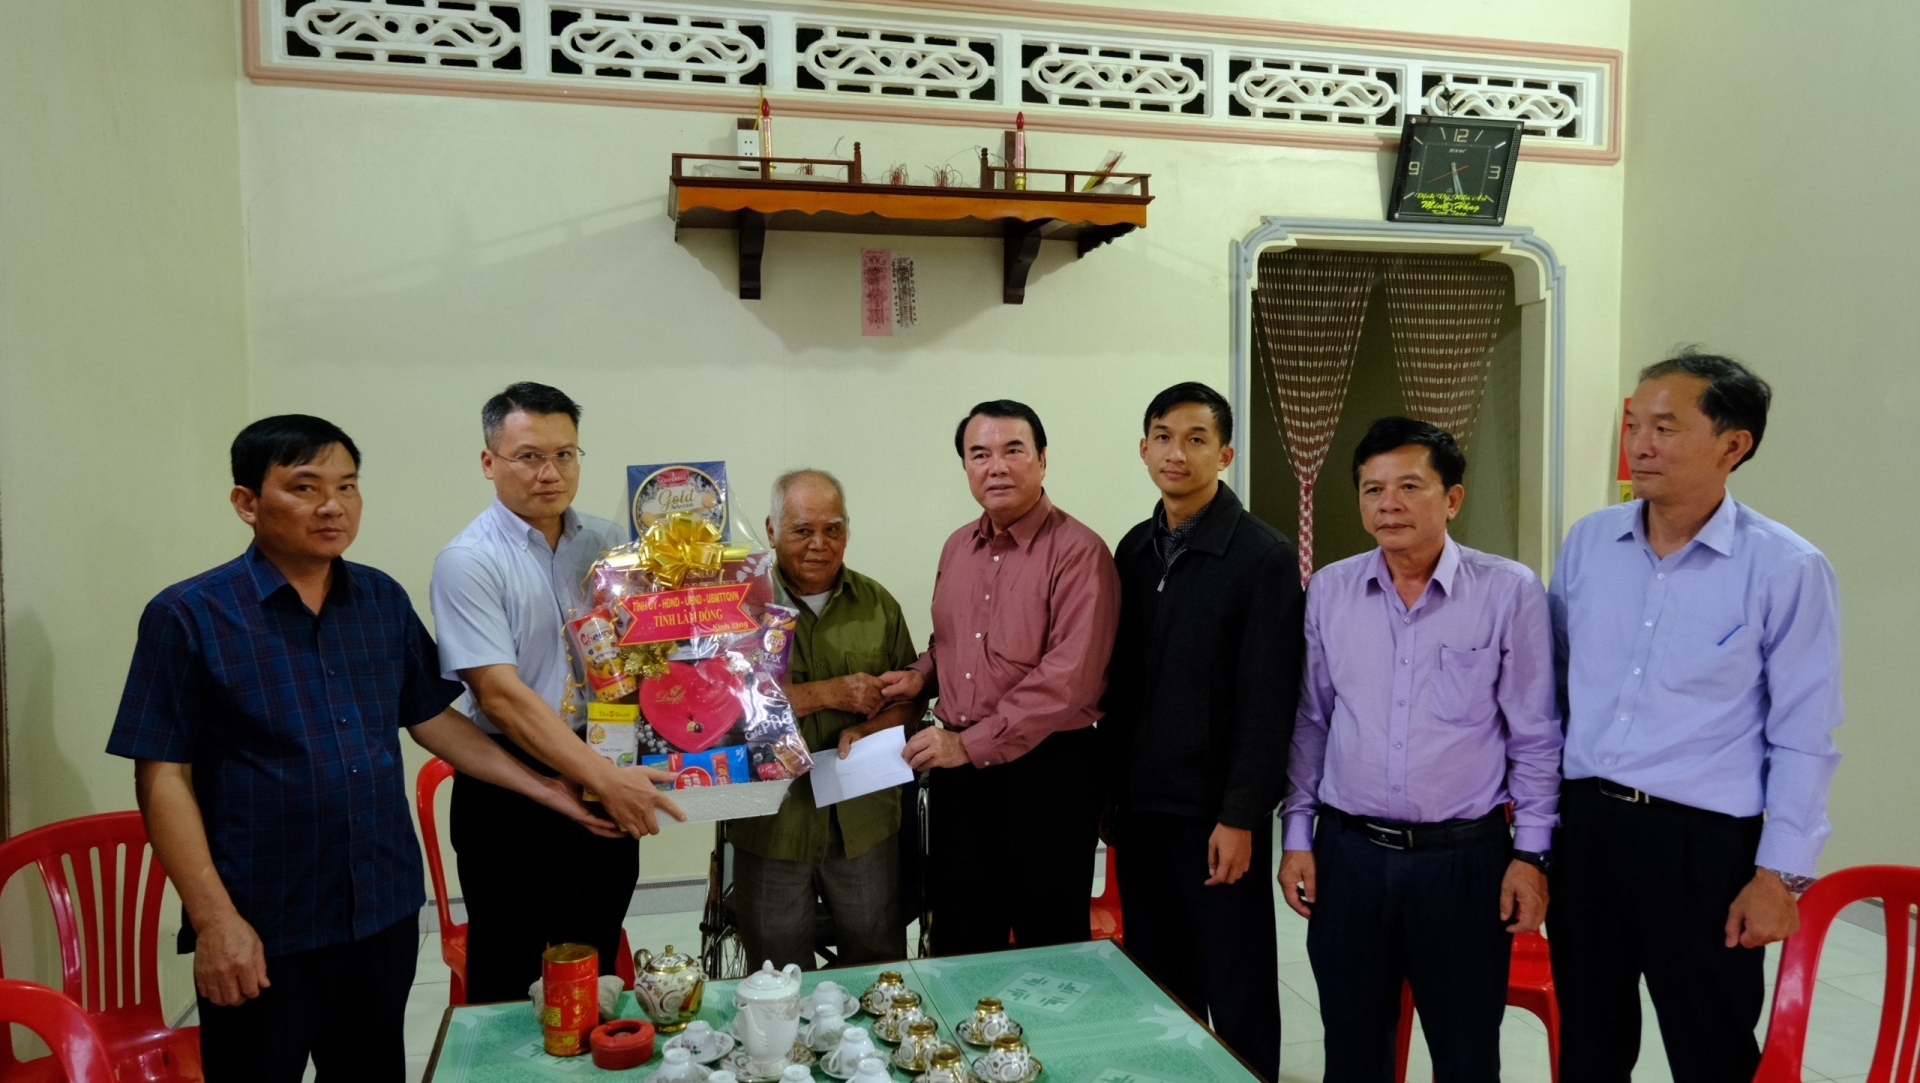 Phó Chủ tịch UBND tỉnh Phạm S cùng đoàn công tác thăm hỏi, tặng quà ông Hoàng  Kim Thành ở huyện Cát Tiên